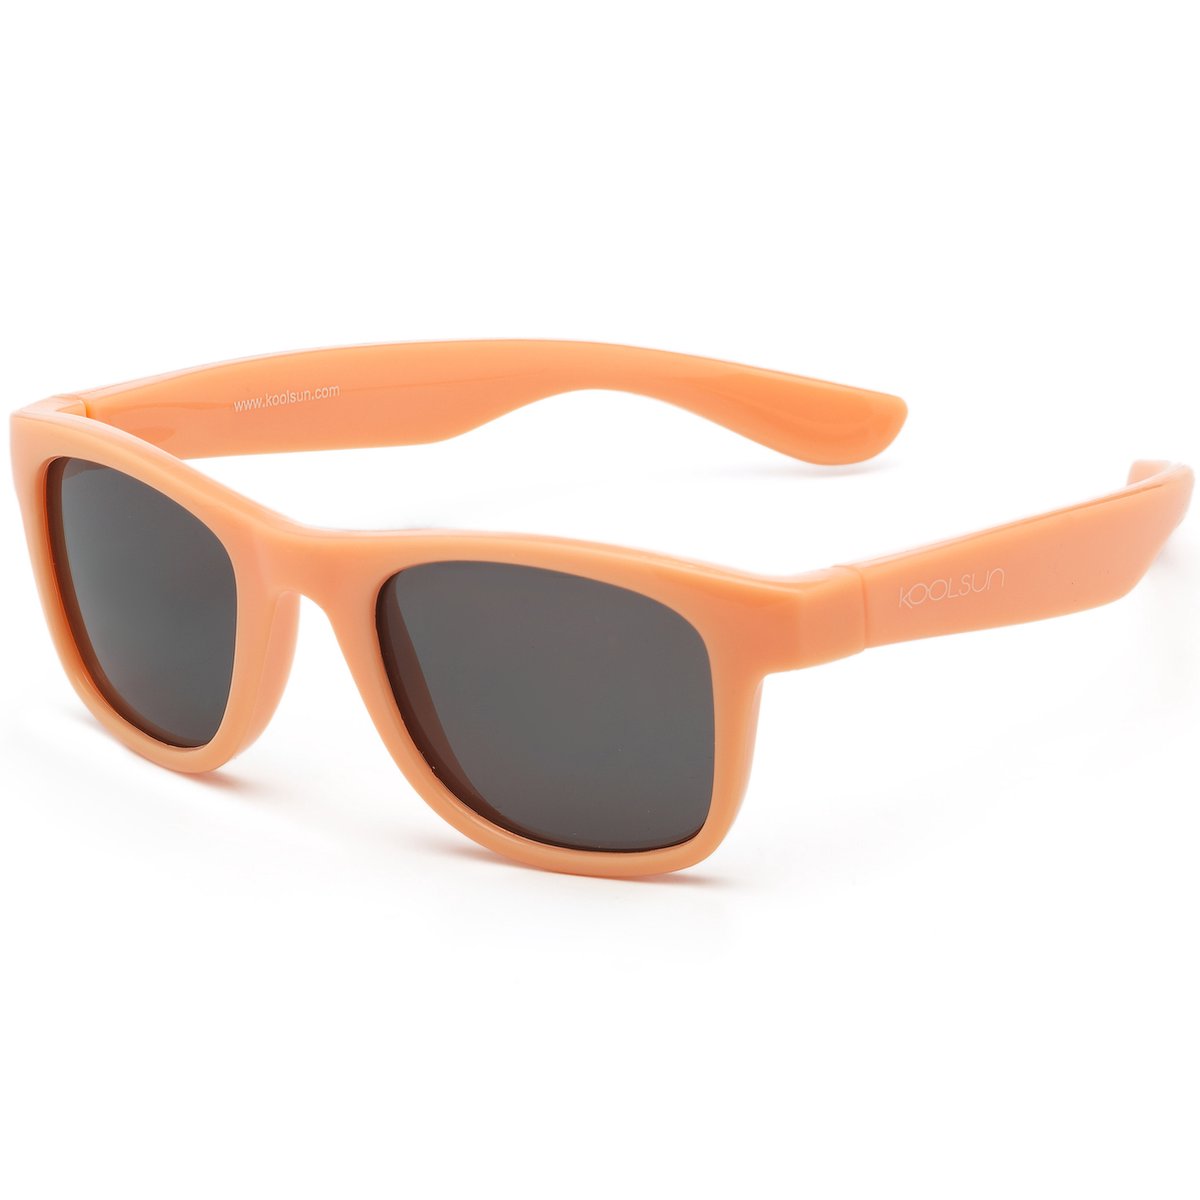 KOOLSUN® Wave - kinder zonnebril - Papaya - 3-10 jaar - UV400 Categorie 3